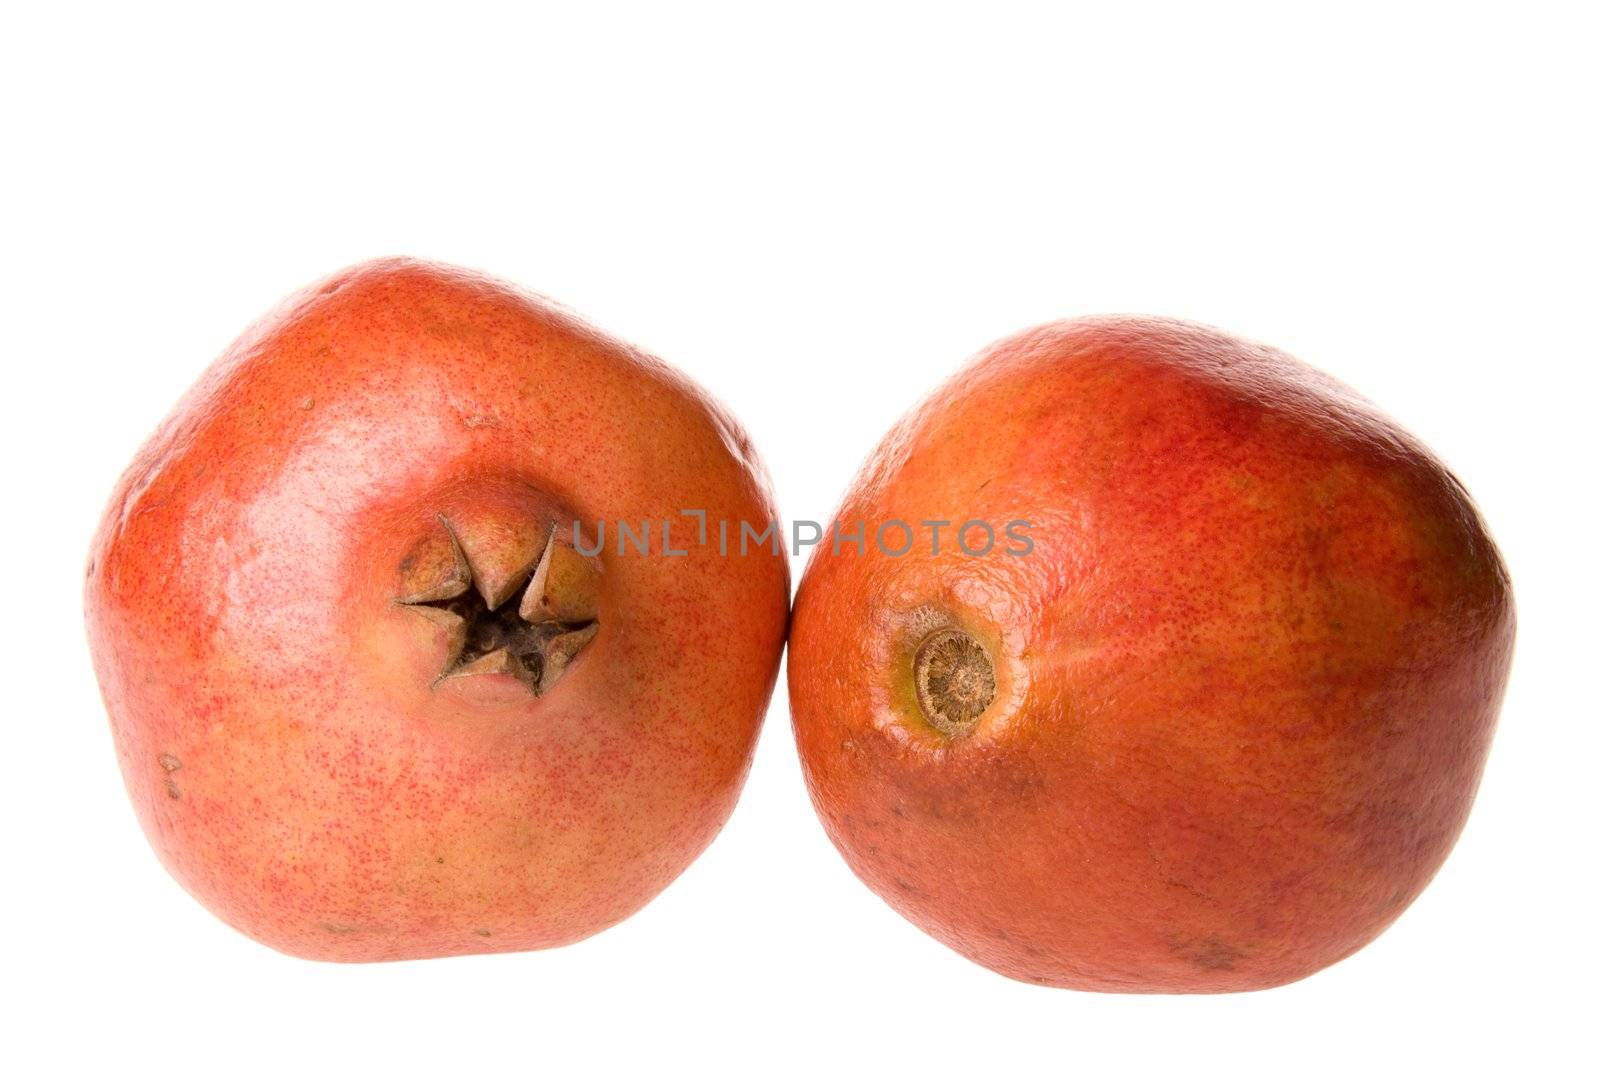 Isolated close-up image of pomegranates.